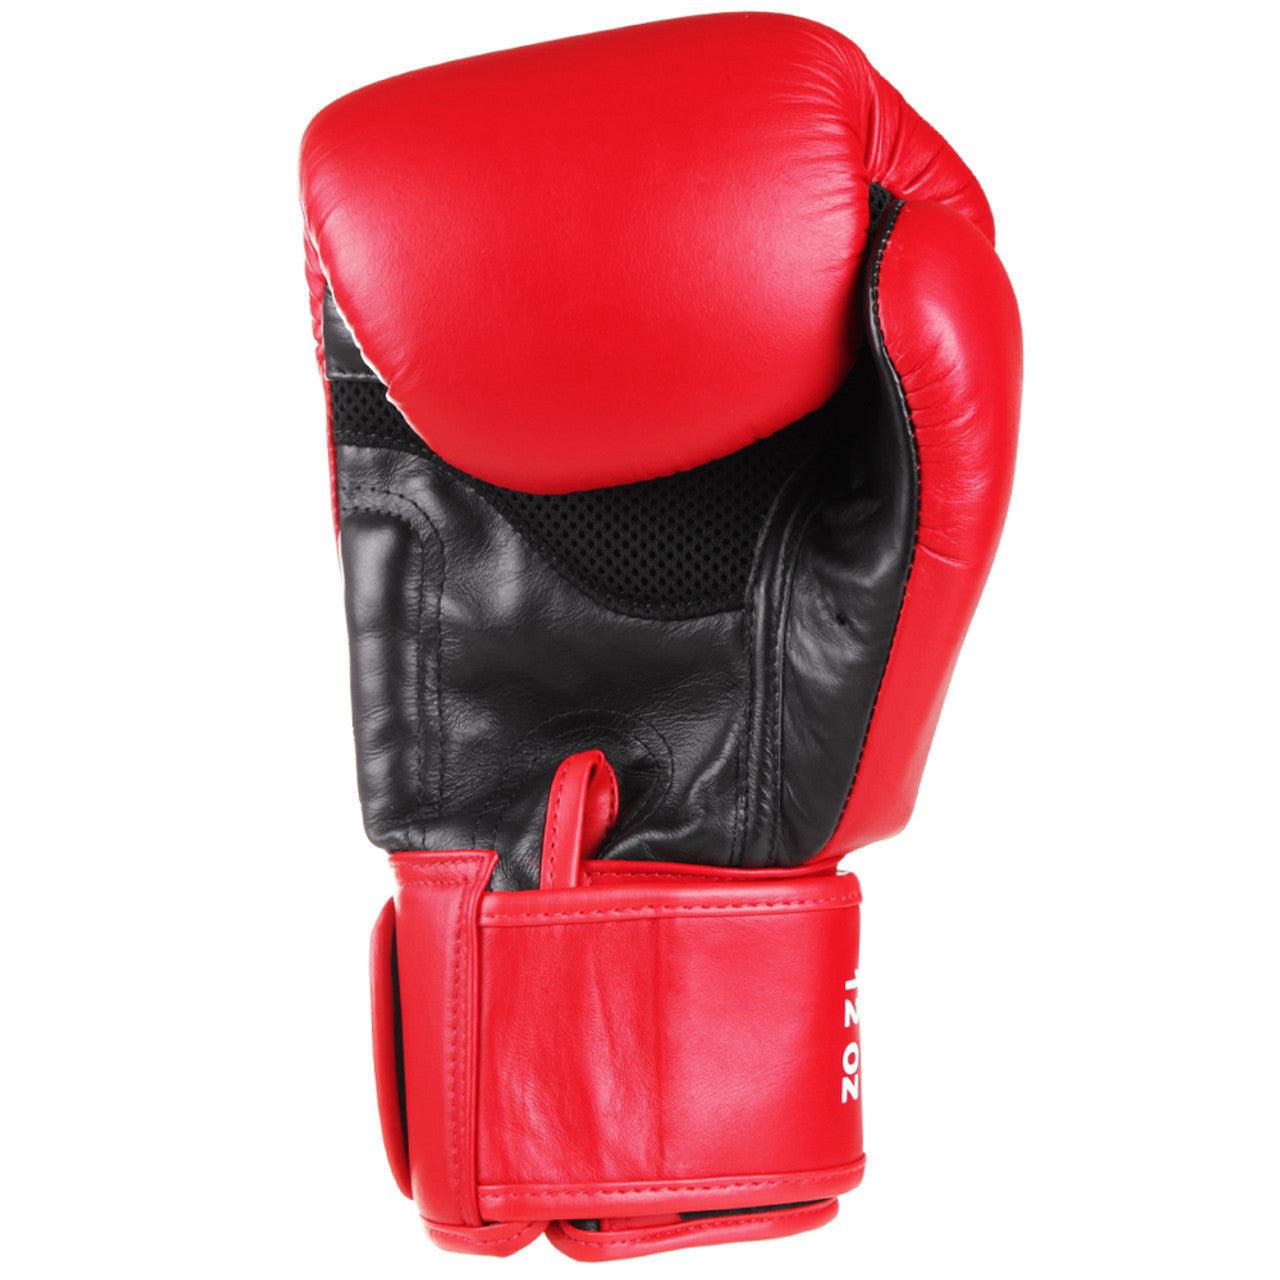 Original Thai Boxing Gloves - Red - Violent Art Shop